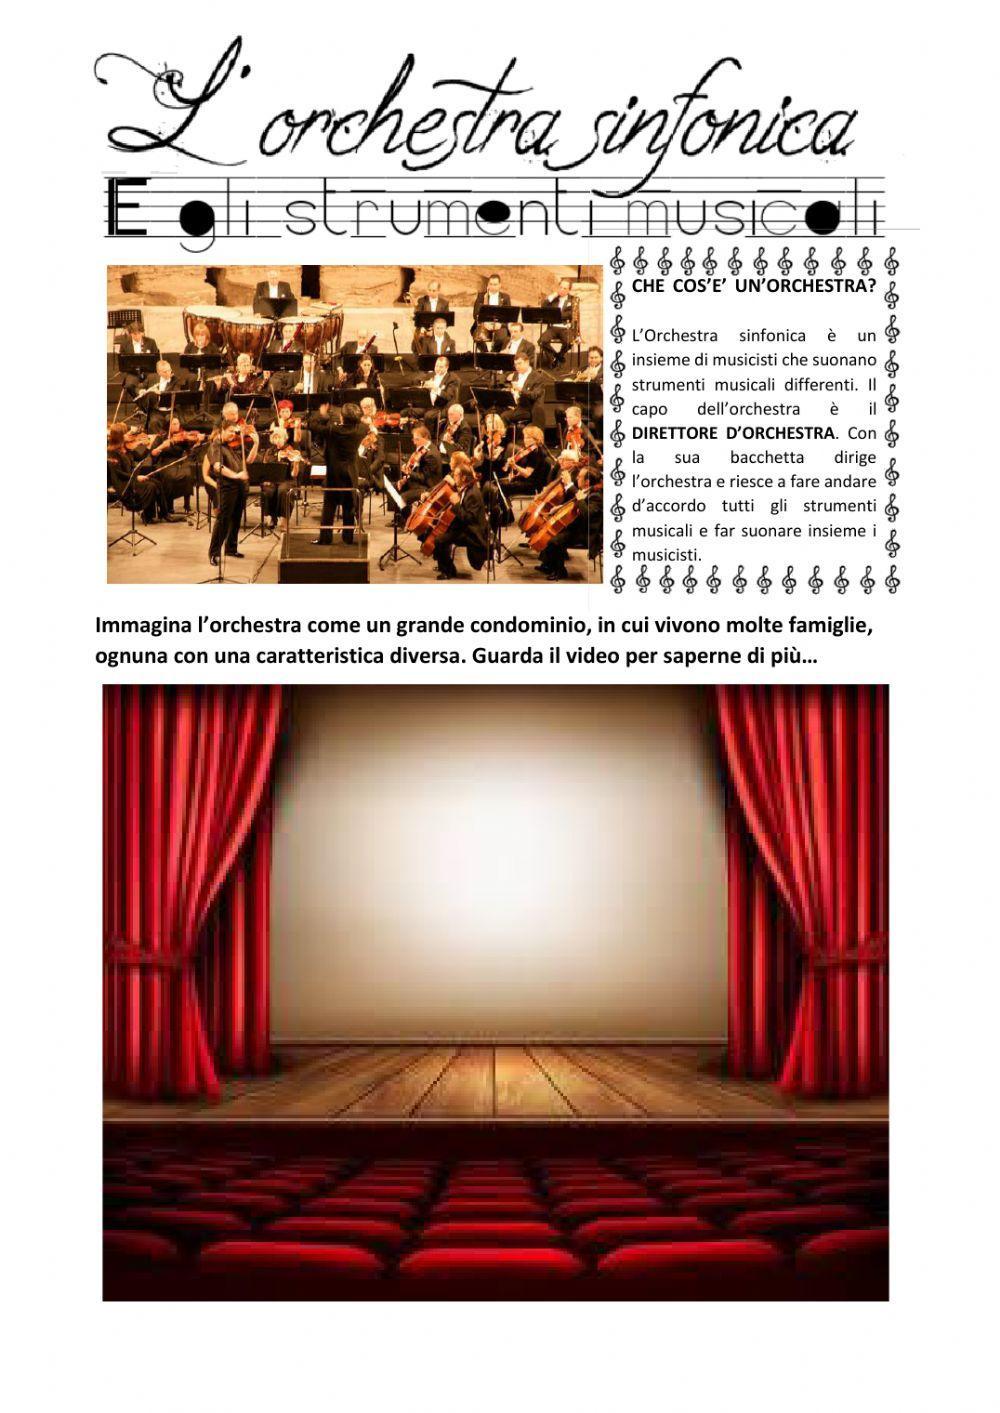 L'orchestra sinfonica: le famiglie degli strumenti musicali